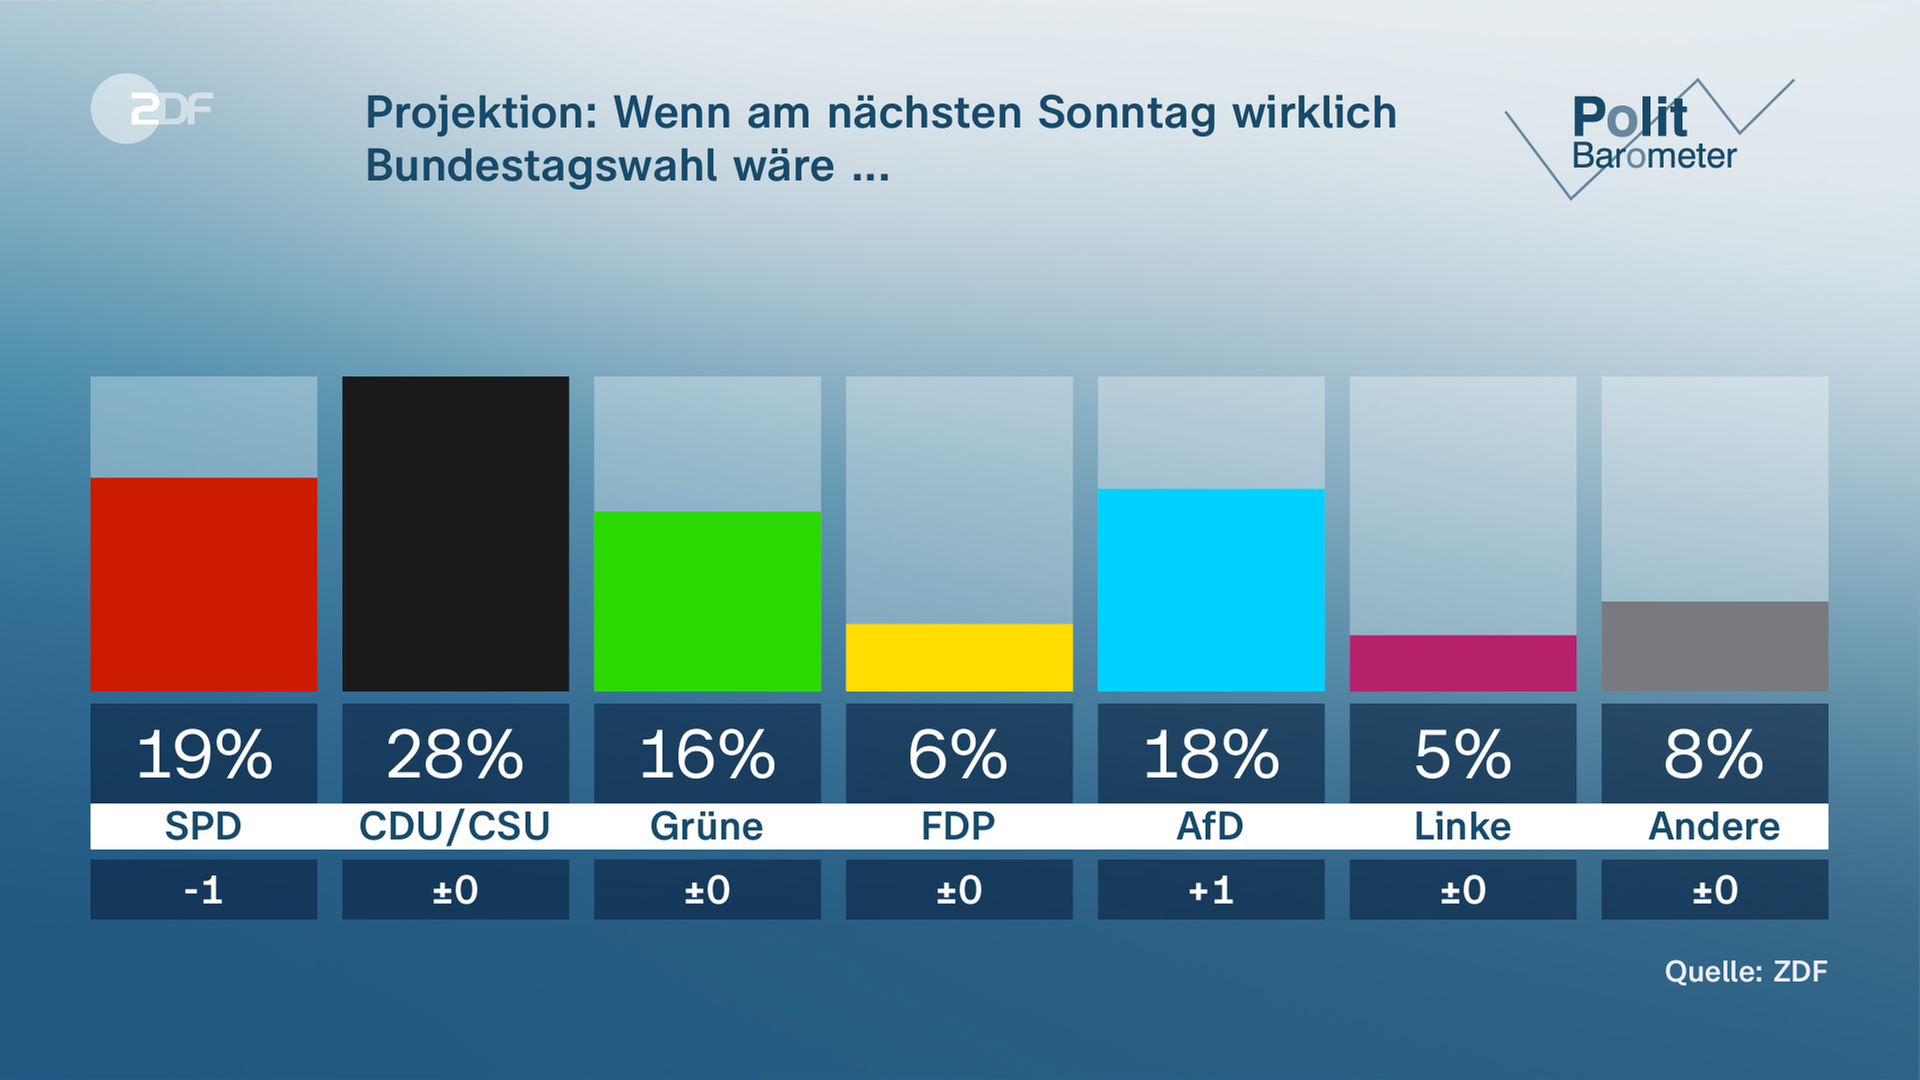 ZDF-Politbarometer-Grafik mit der Projektion